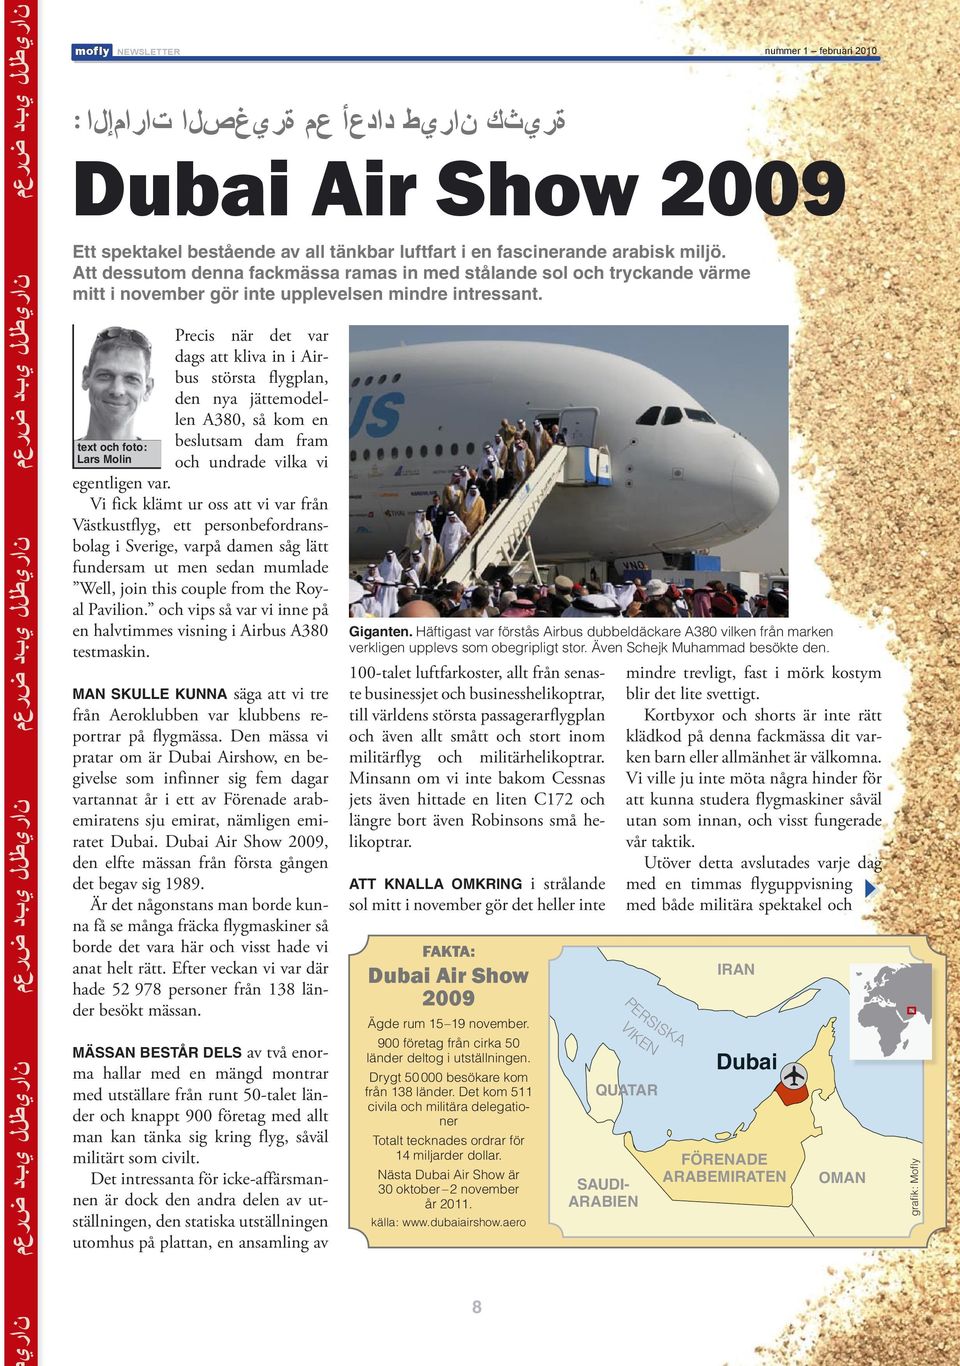 text och foto : Lars Molin Precis när det var dags att kliva in i Airbus största flygplan, den nya jättemodellen A380, så kom en beslutsam dam fram och undrade vilka vi egentligen var.